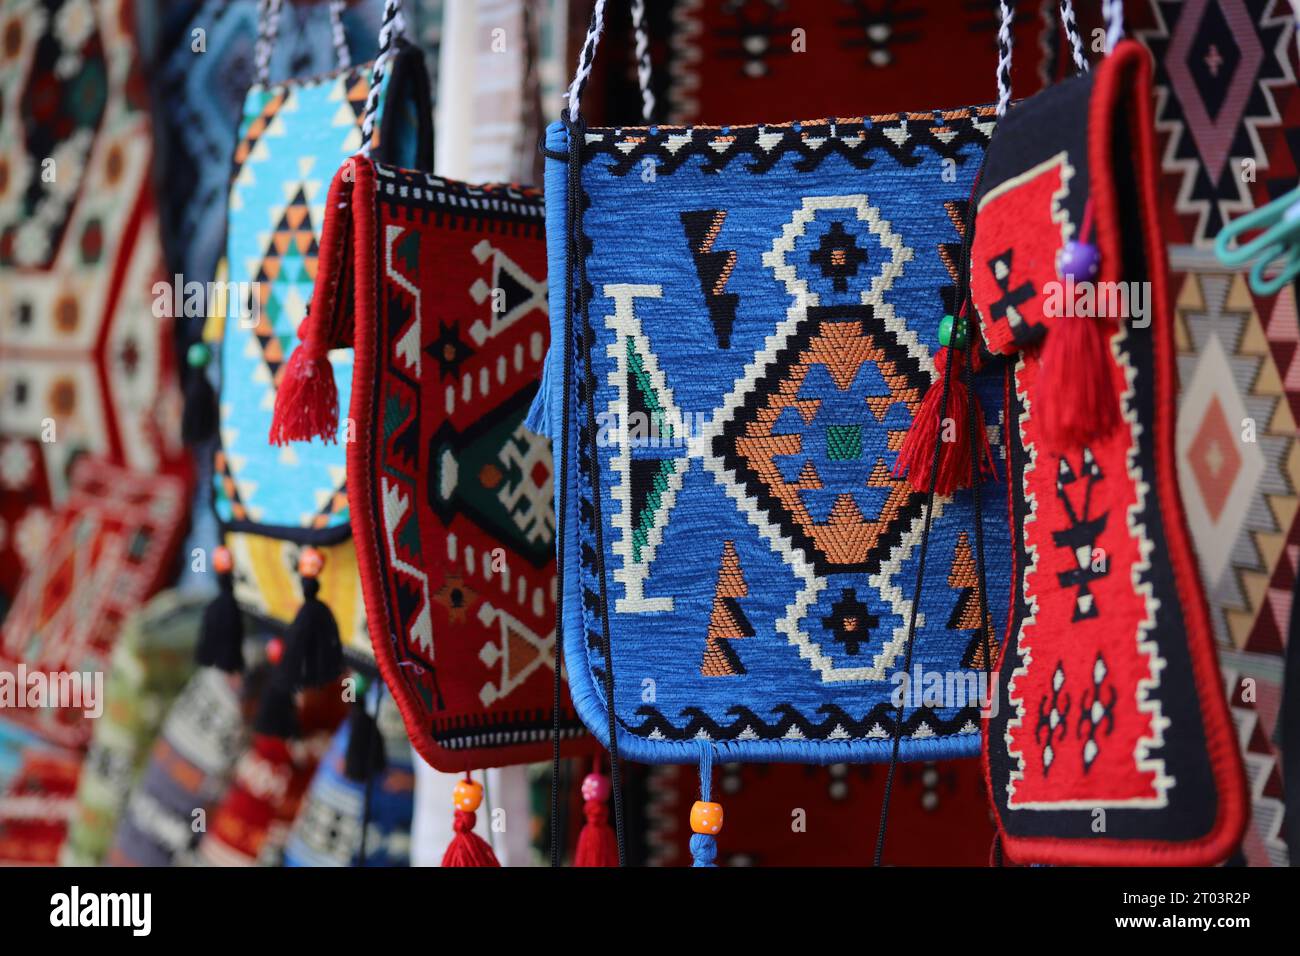 Eine ungleichmäßig hängende Reihe von auffälligen, geometrischen Mustern, mehrfarbigen, ethnischen Look, gewebten Teppich- oder Teppichschultertaschen mit Quasten und Perlen. Stockfoto